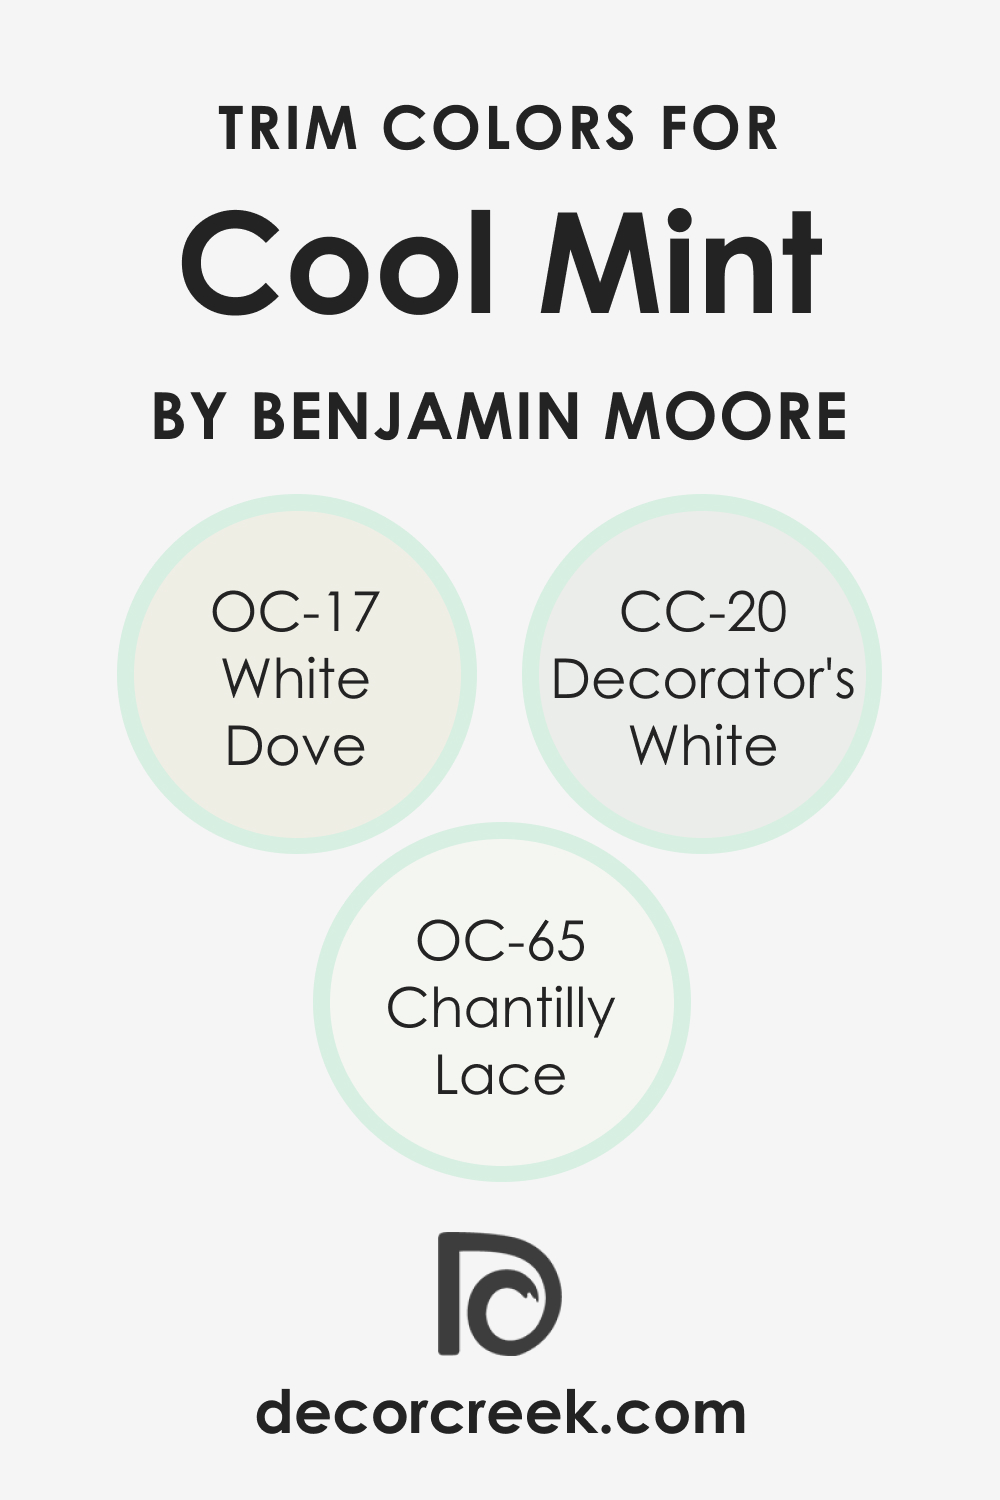 Trim Colors of Cool Mint 582